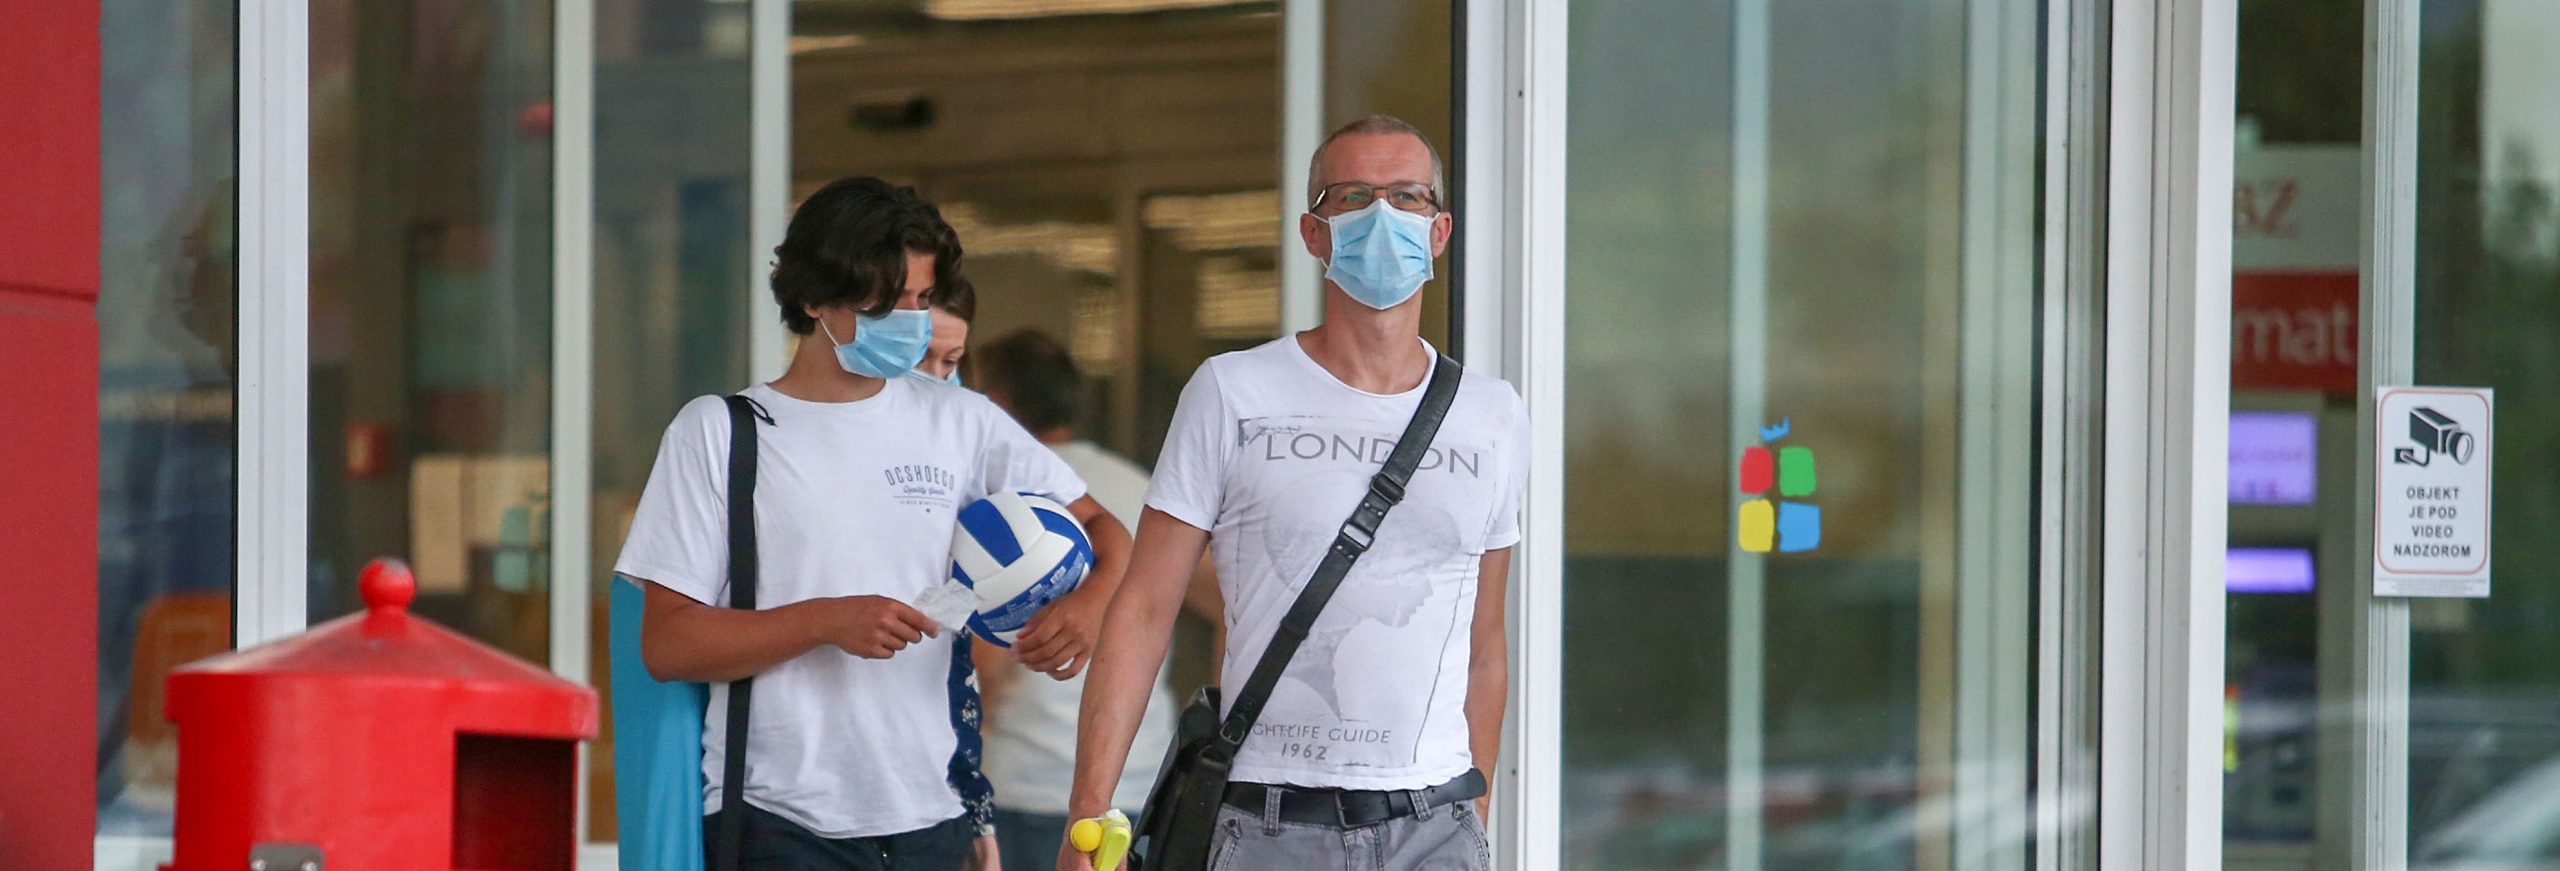 12.07.2020., Zagreb - Gradjani nose maske u shoping centrima, a koje ce uskoro i biti obavezne zbog porasta zarazenih Covidom 19. 
 Photo: Matija Habljak/PIXSELL